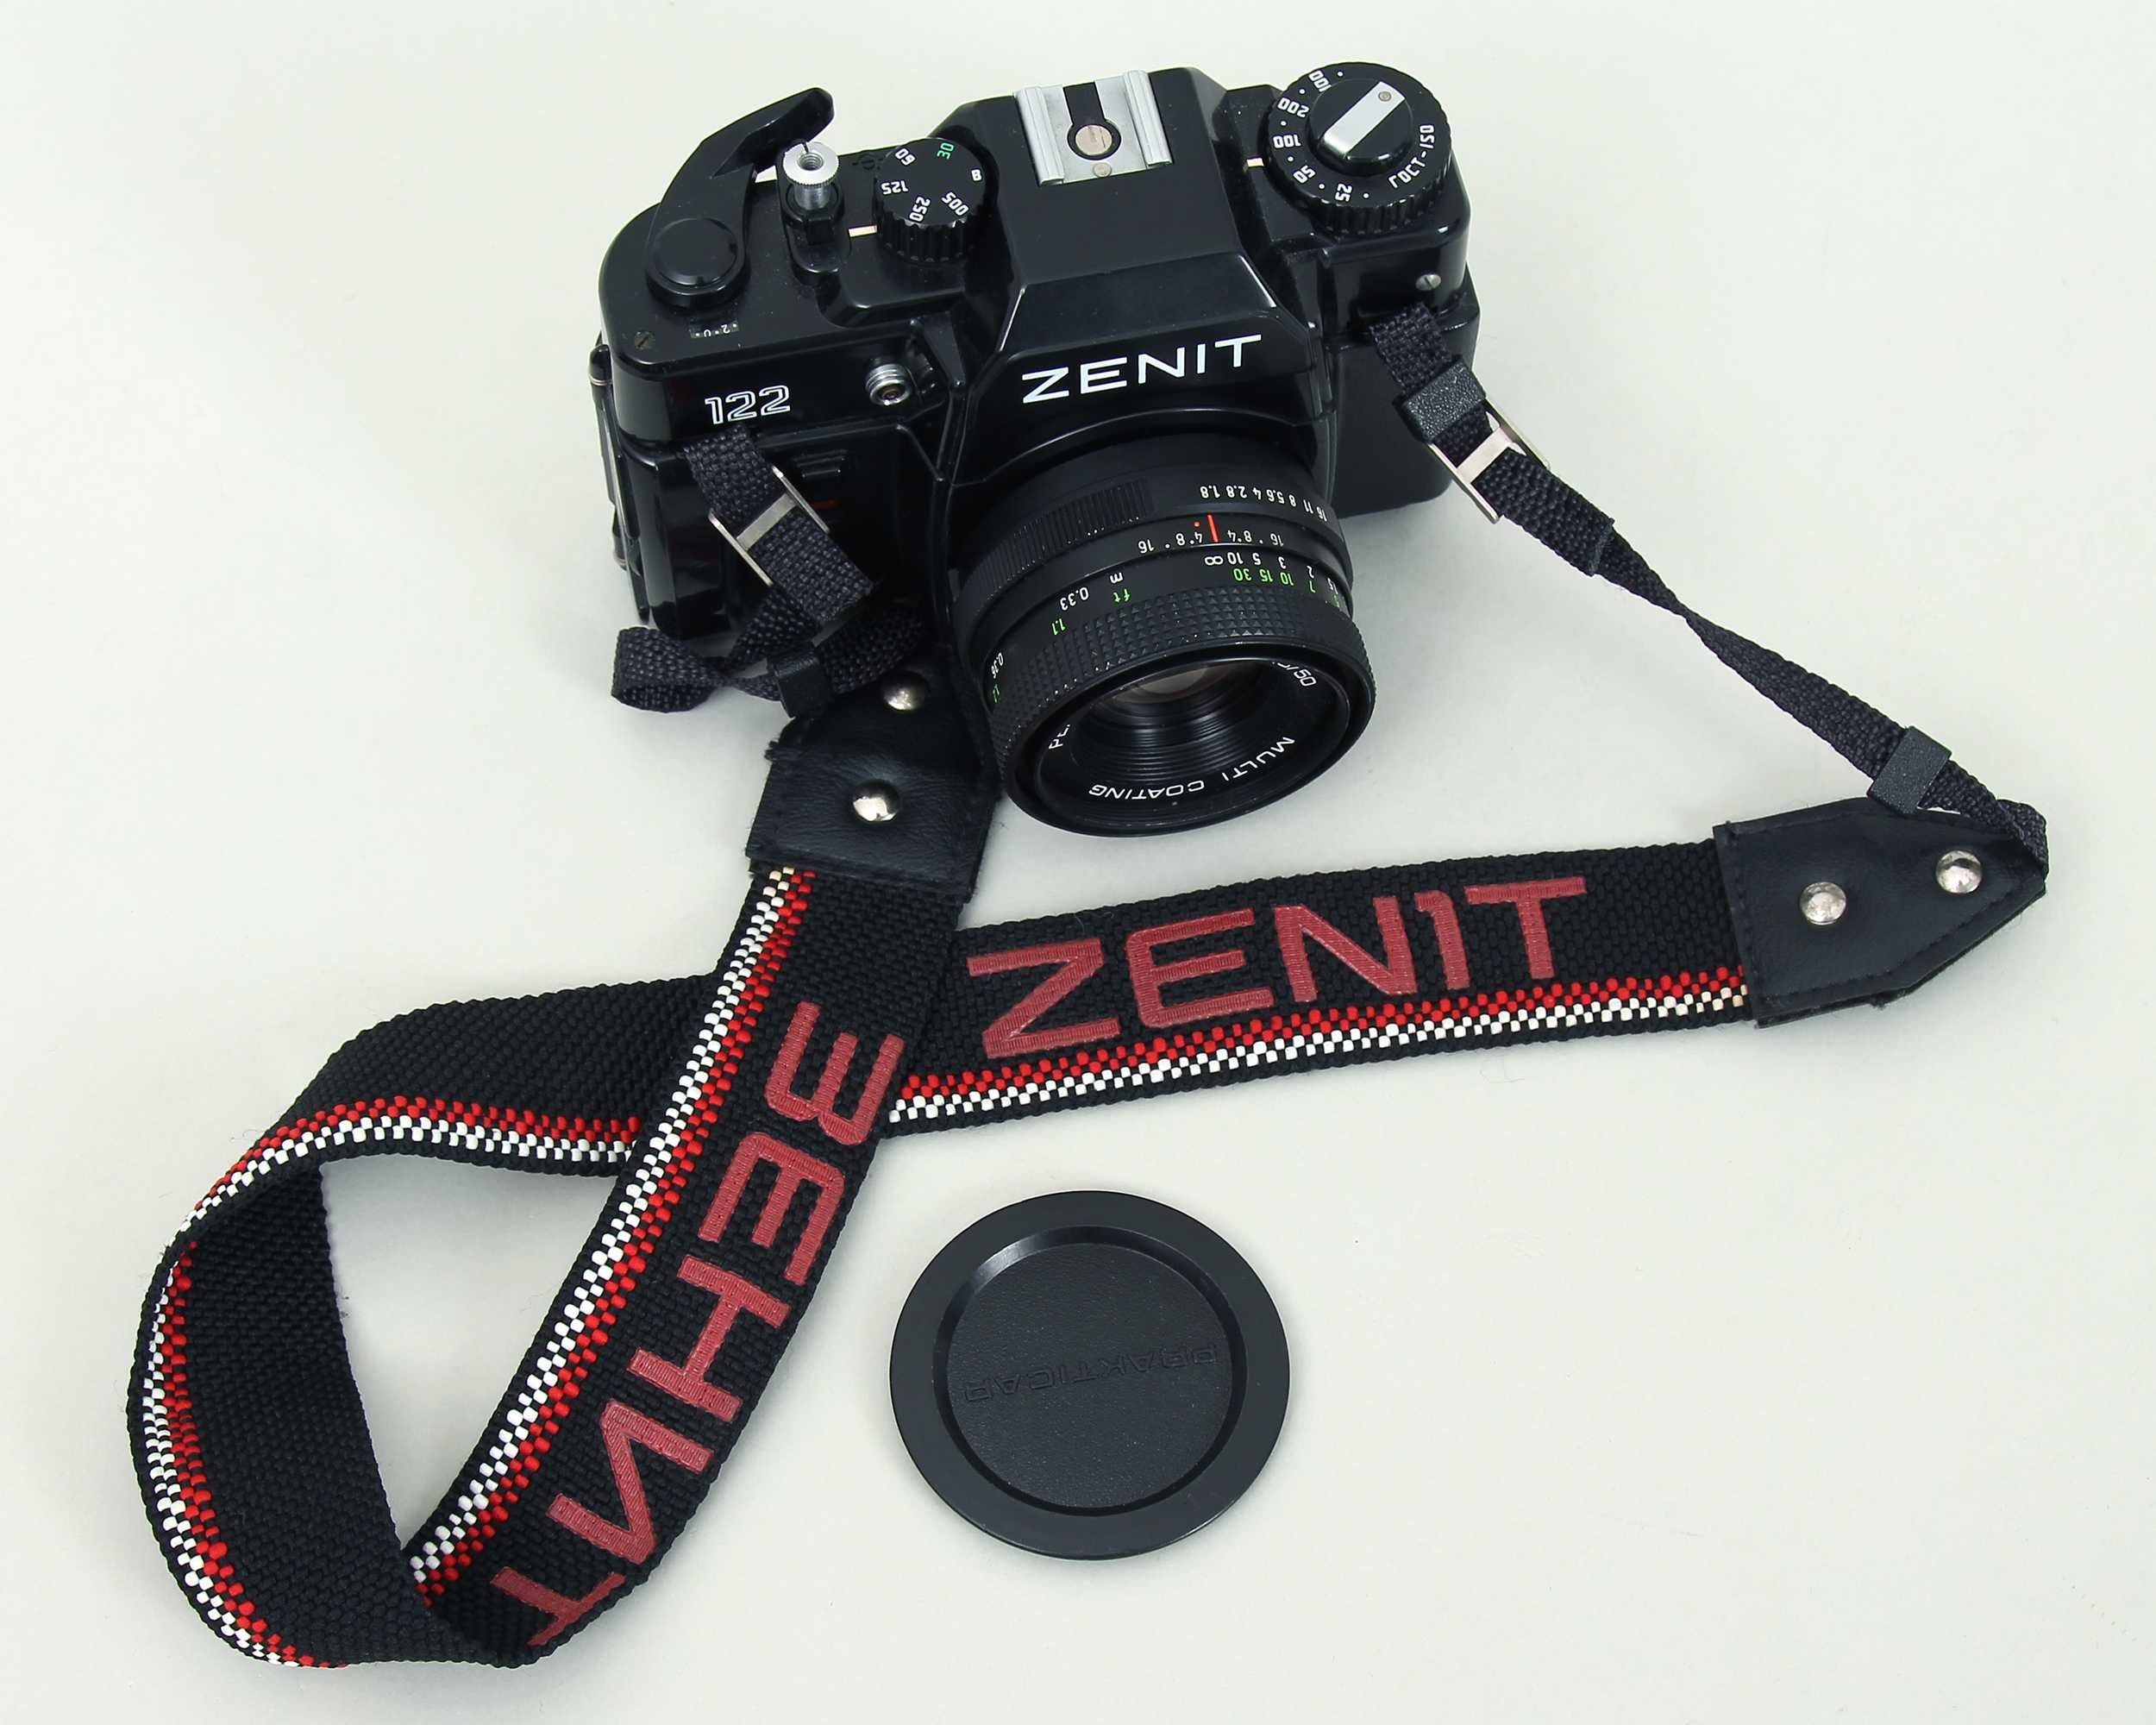 Aparat Fotograficzny Zenit 122 Sprawny Obiektyw Pentacon 1,8/50 mm